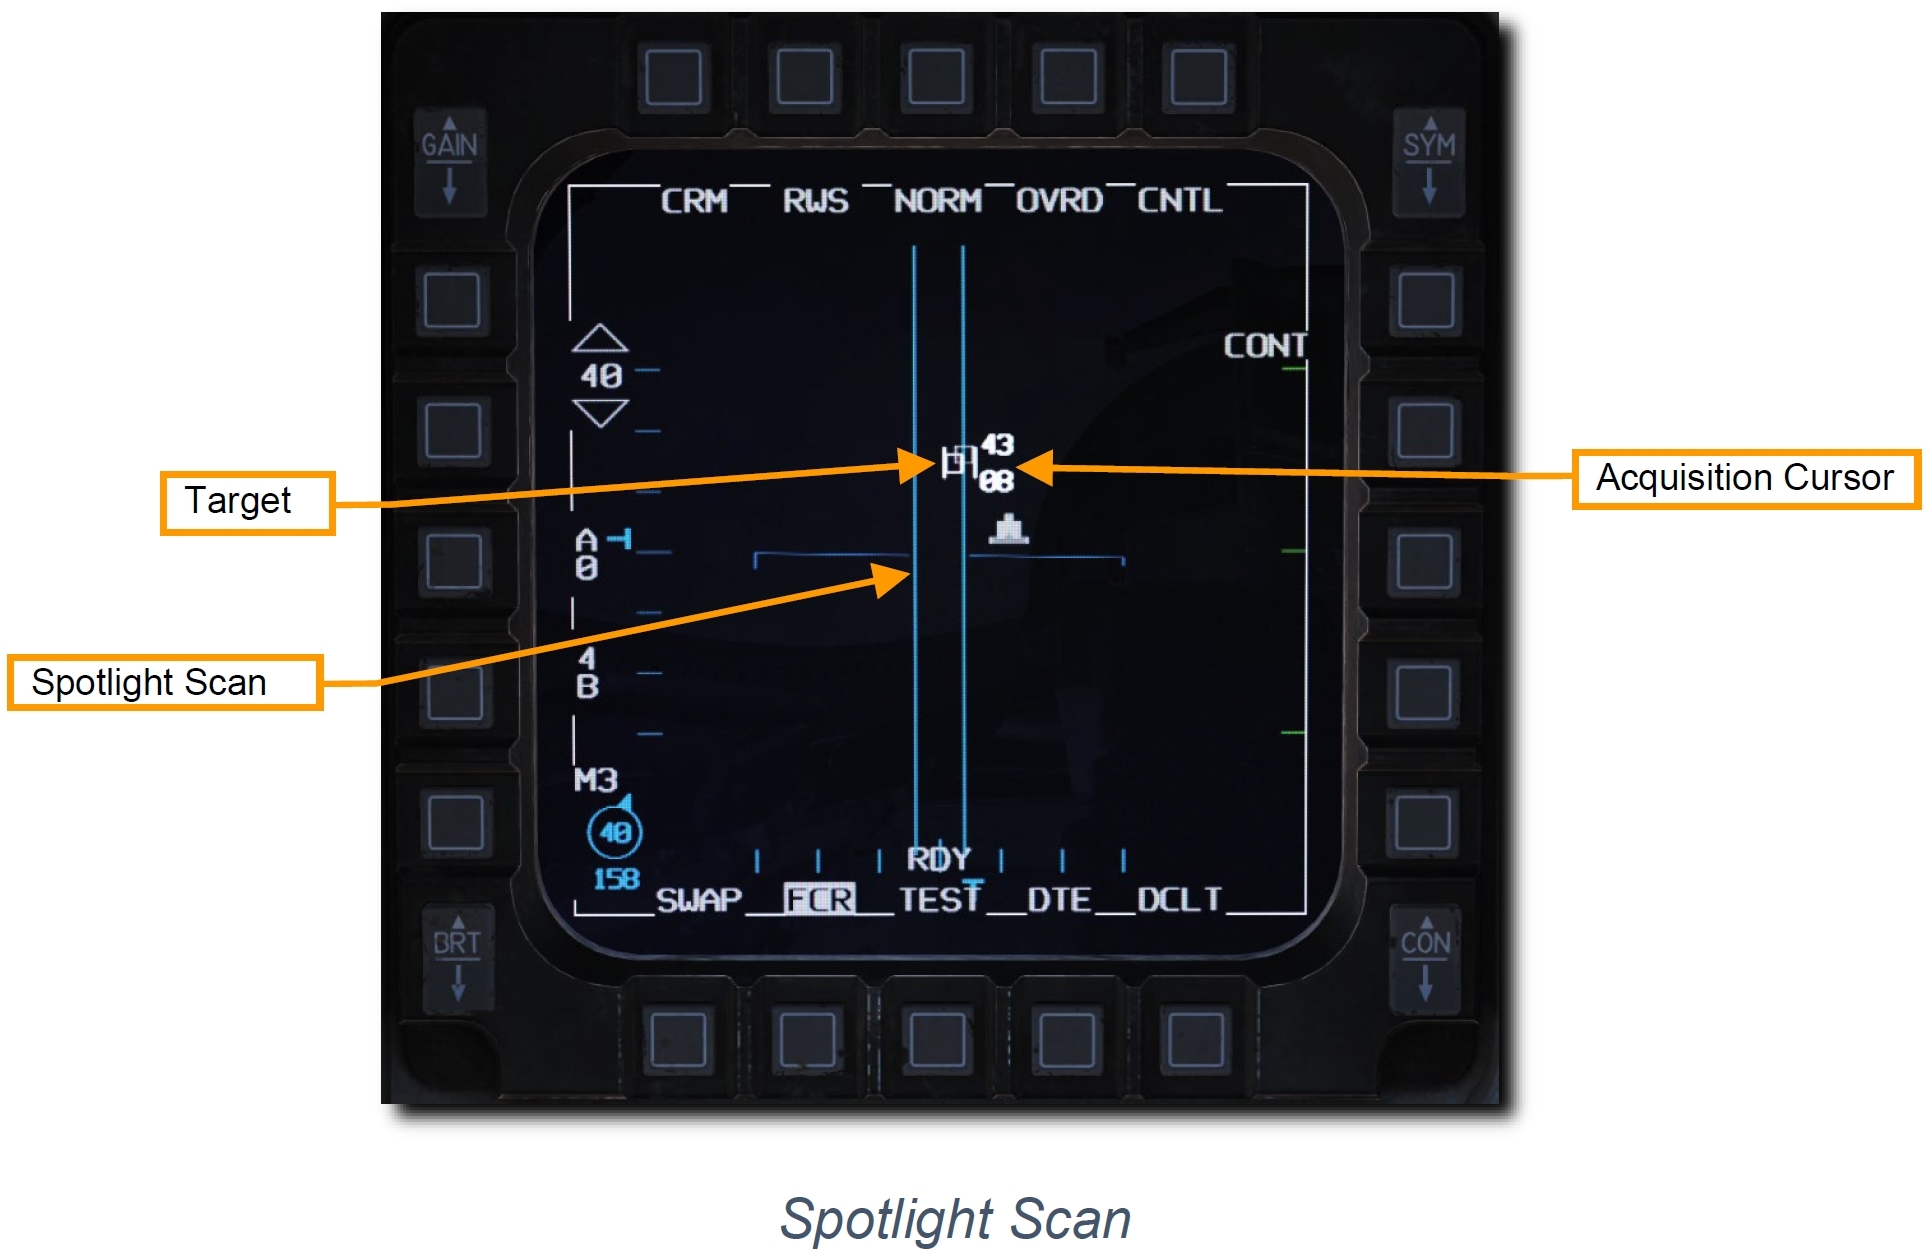 dcs32-radar_sam_spotlight